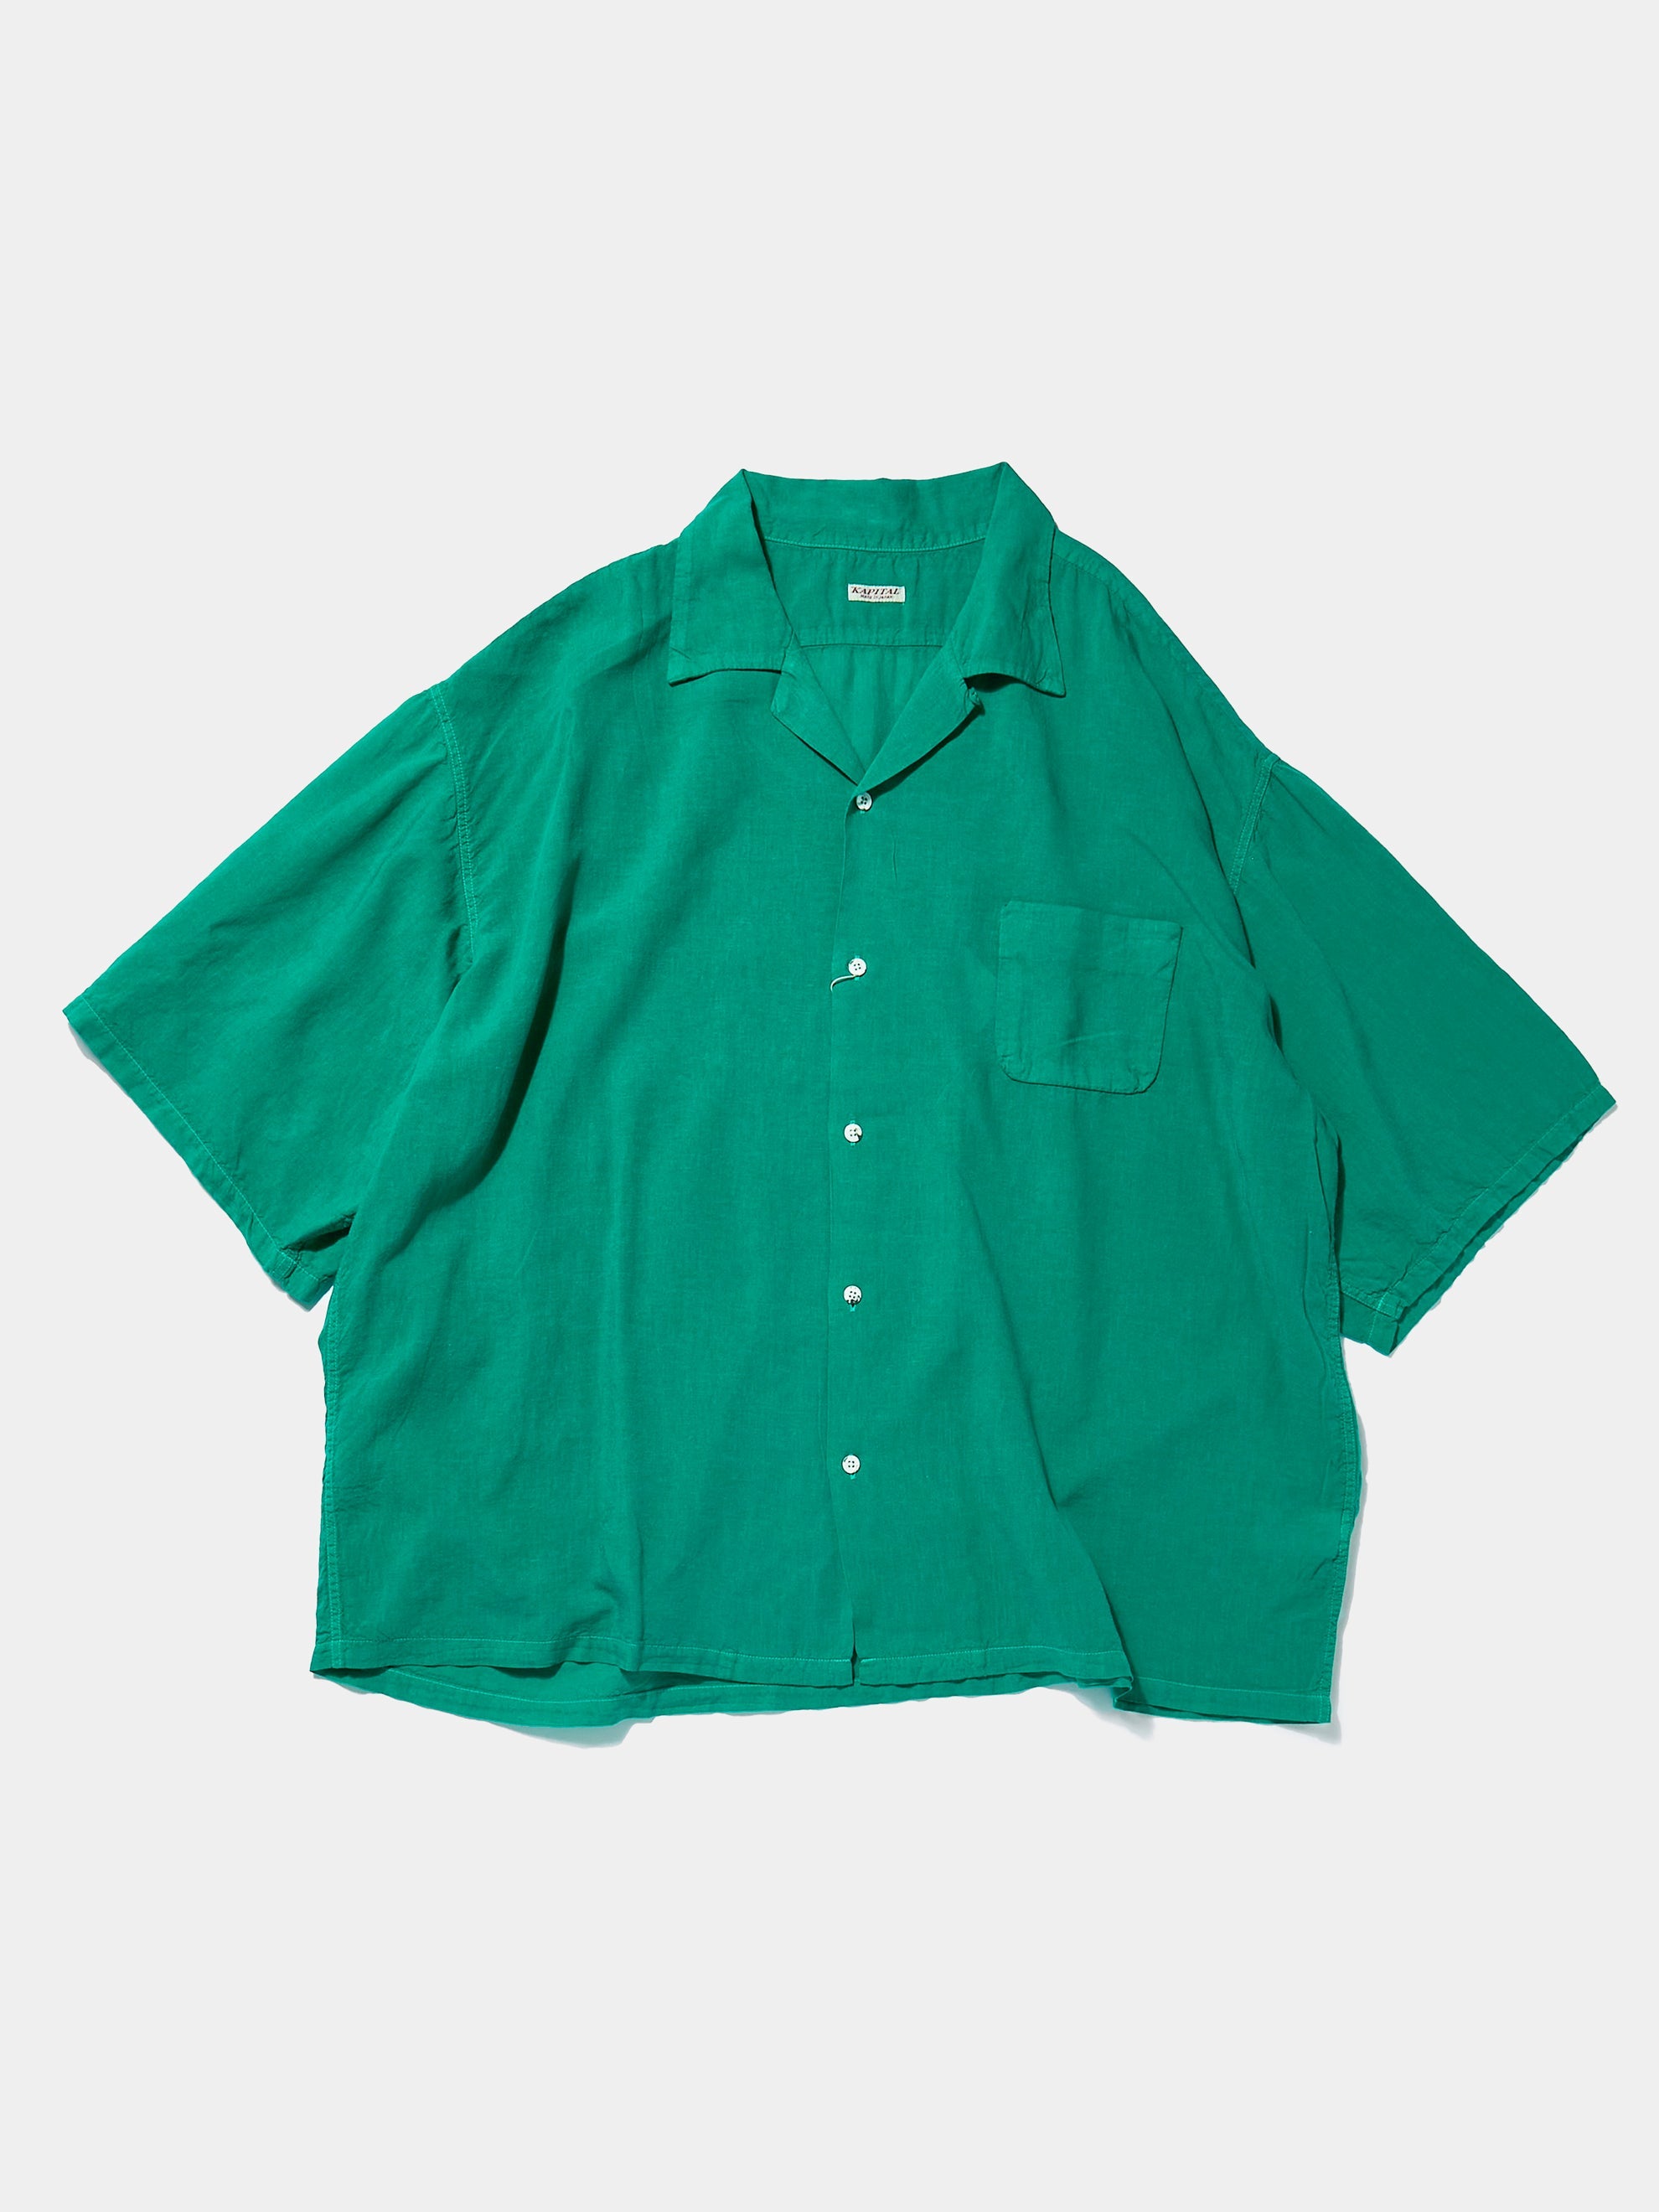 Soft Linen Open Collar BIG Shirt (Green)